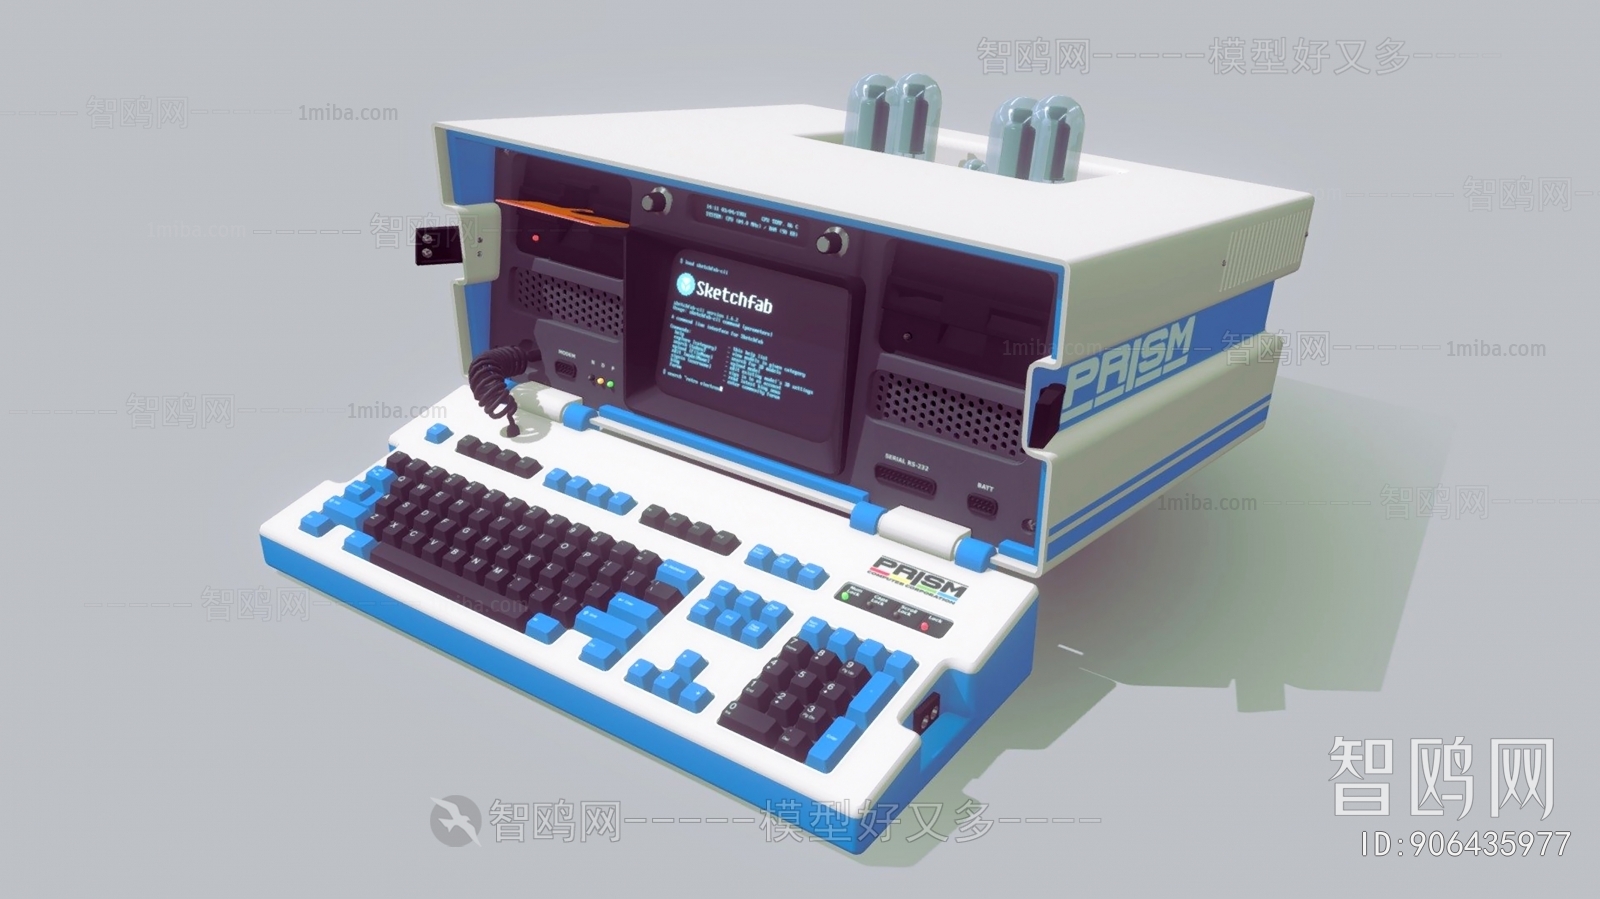 Modern Computer/Computer Screen